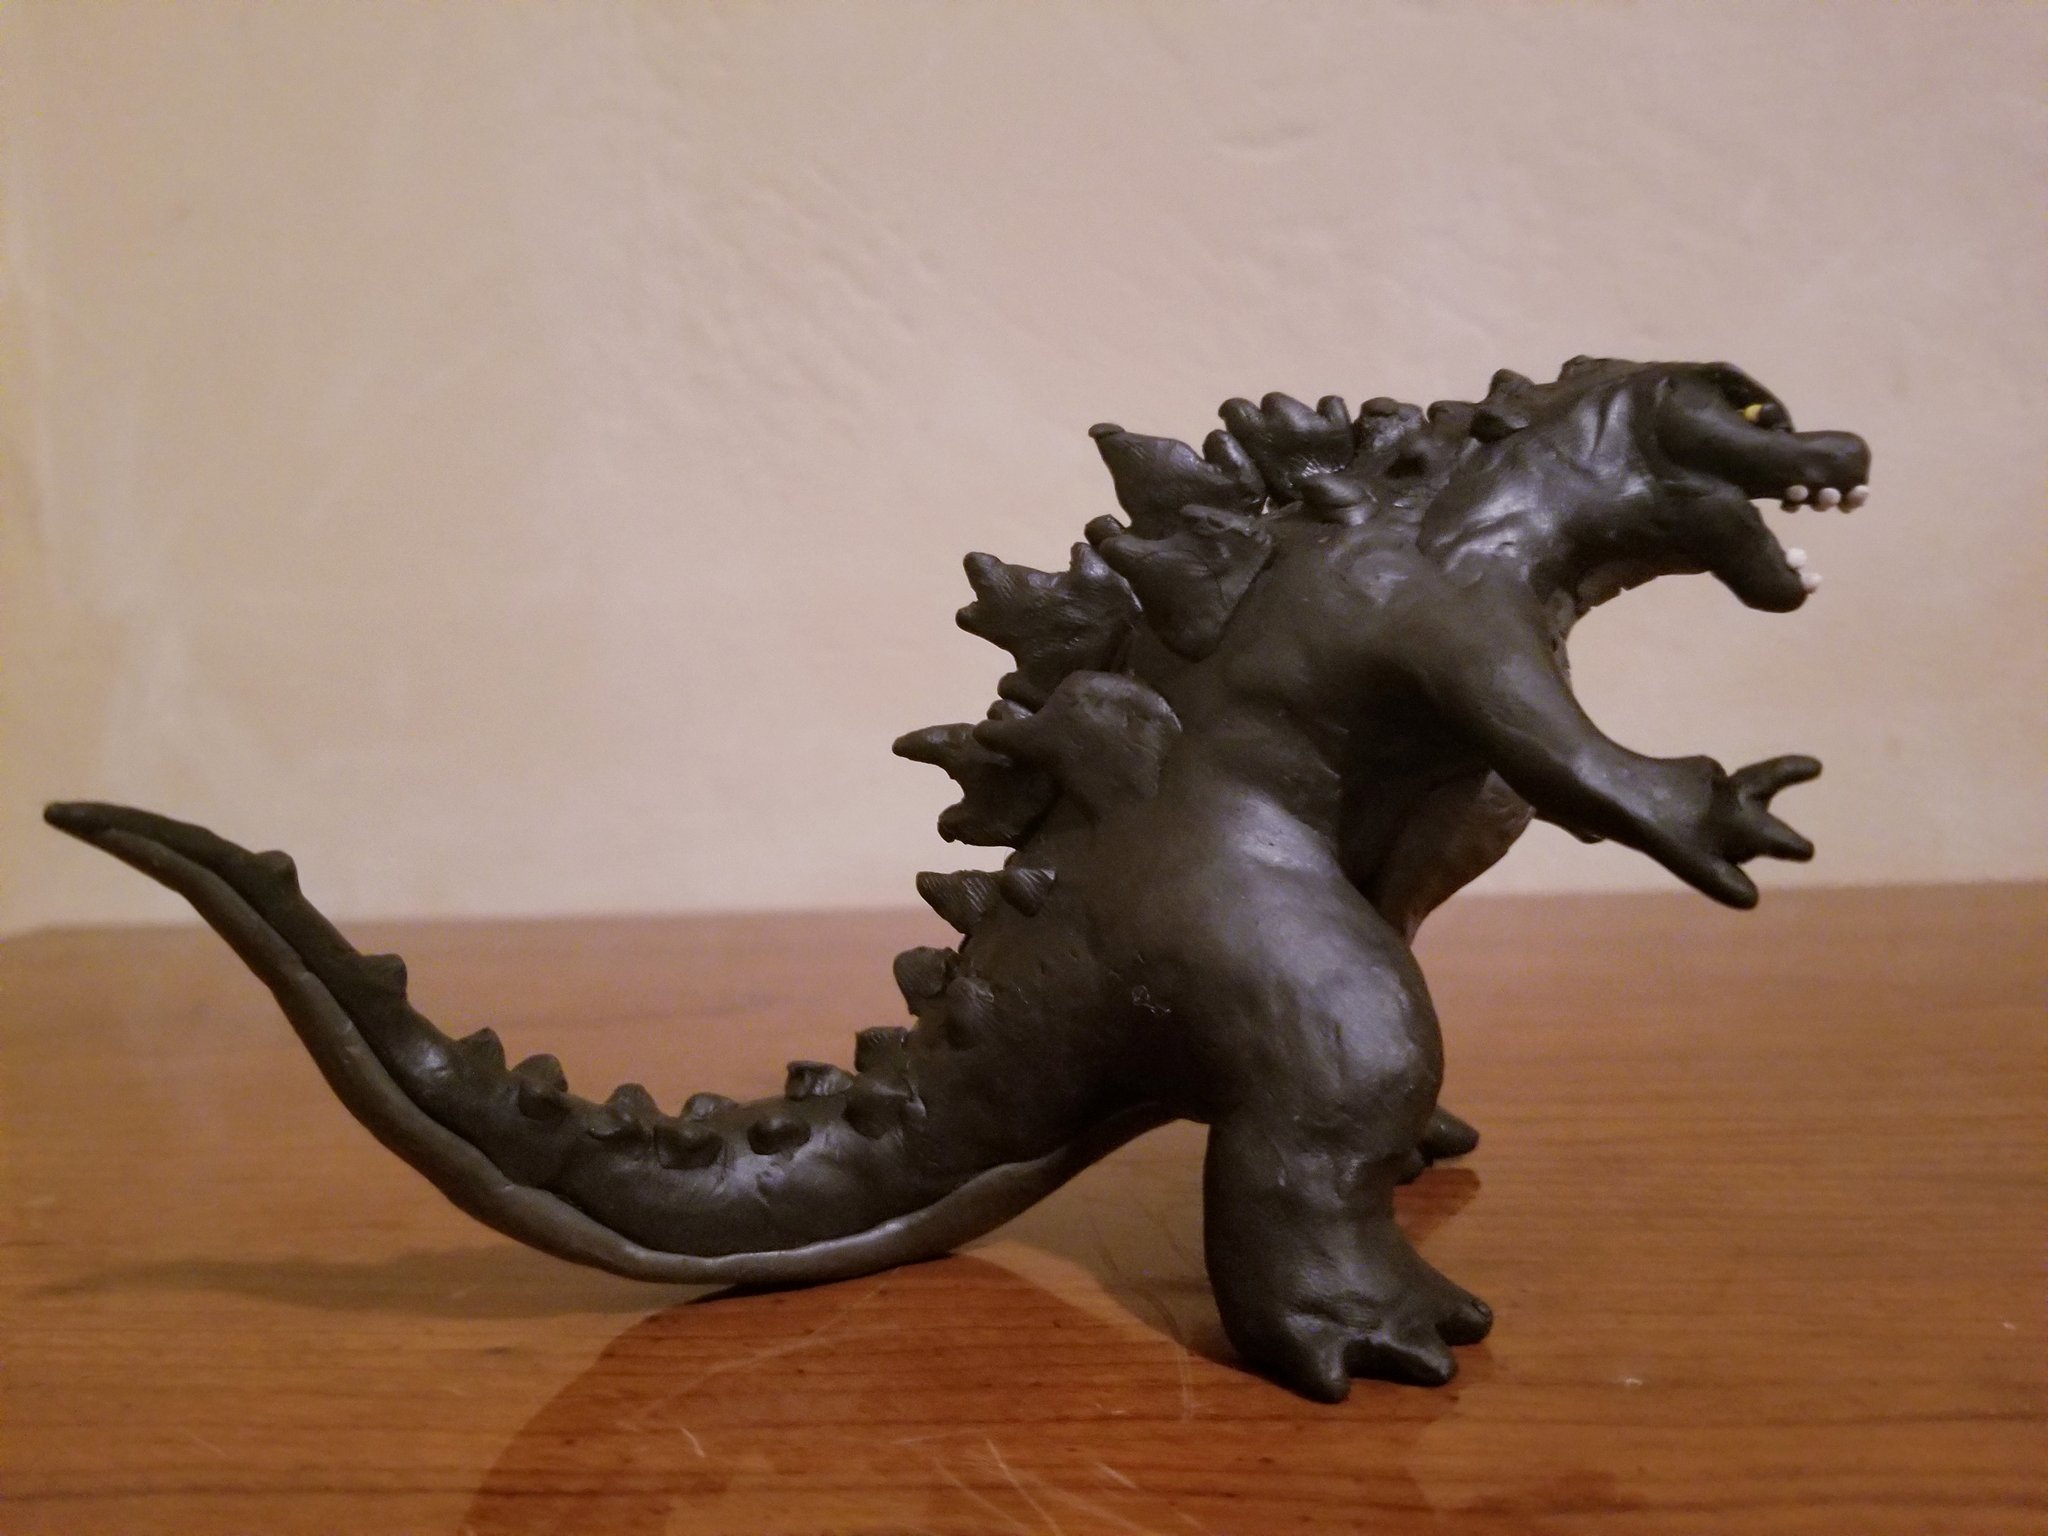 Freddygbaf on Twitter: "I really like Godzilla a lot, big fan. So I did